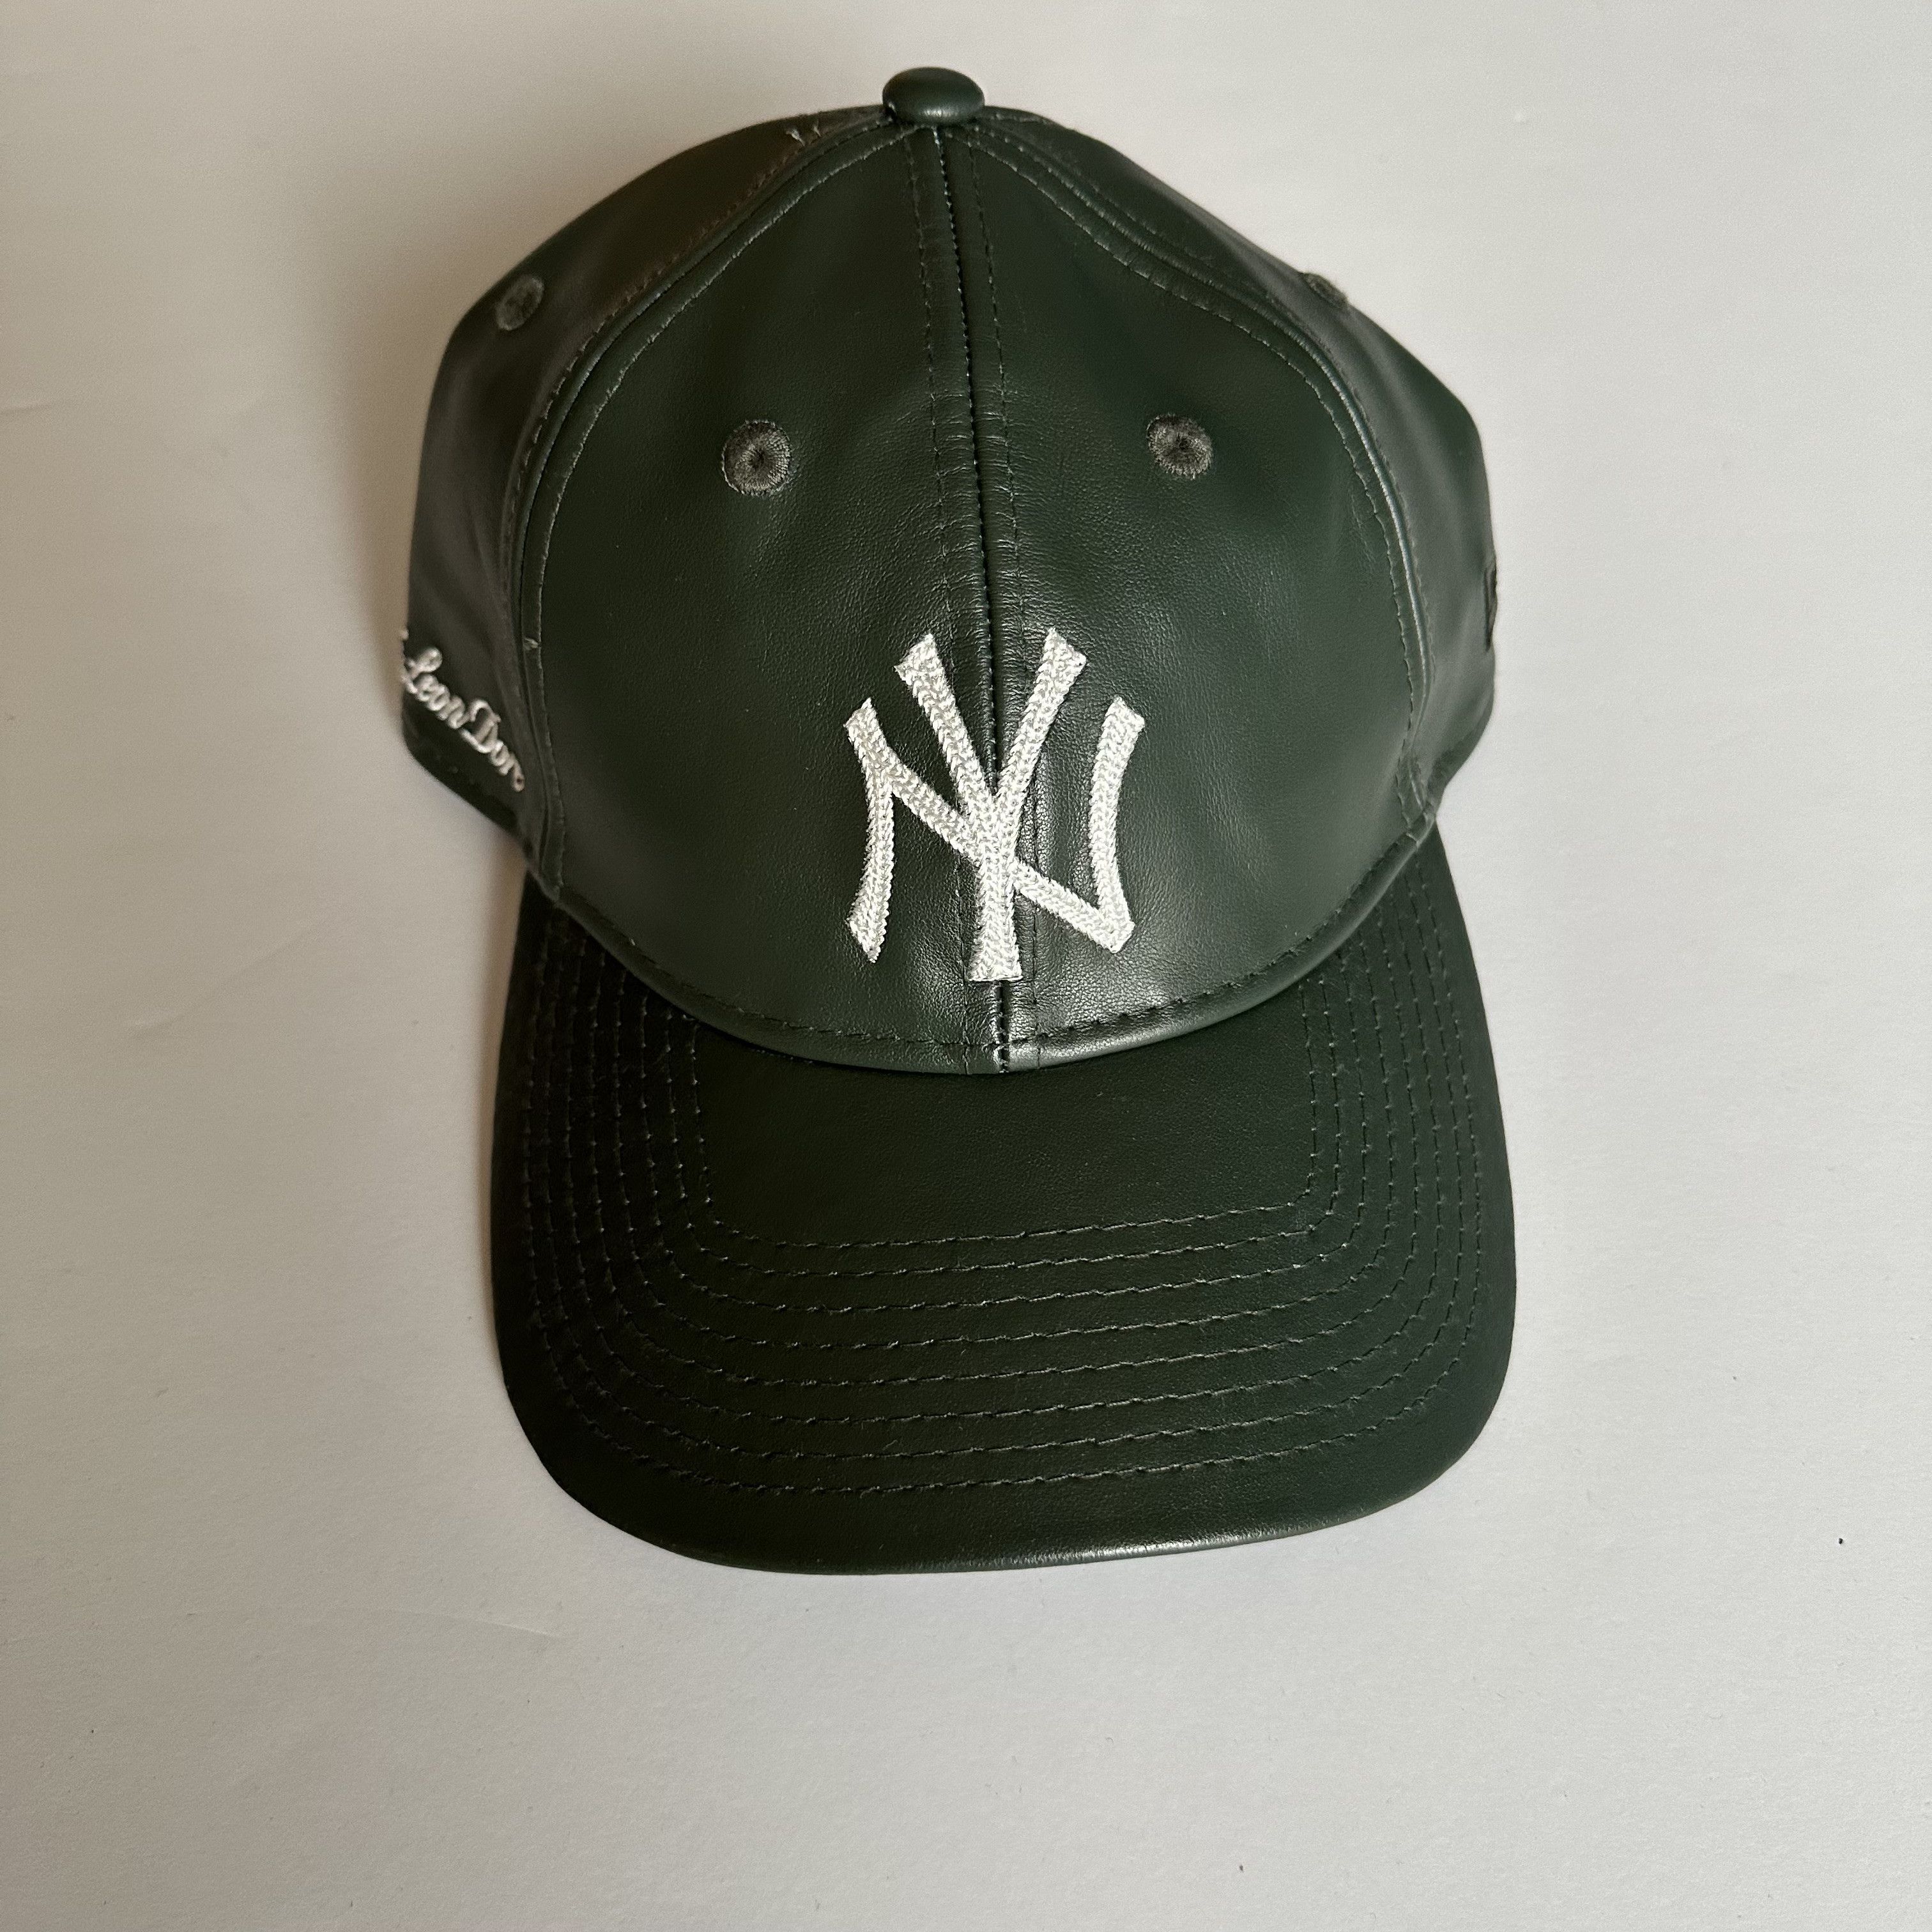 New Era New York Yankees Oversized T-Shirt Moss